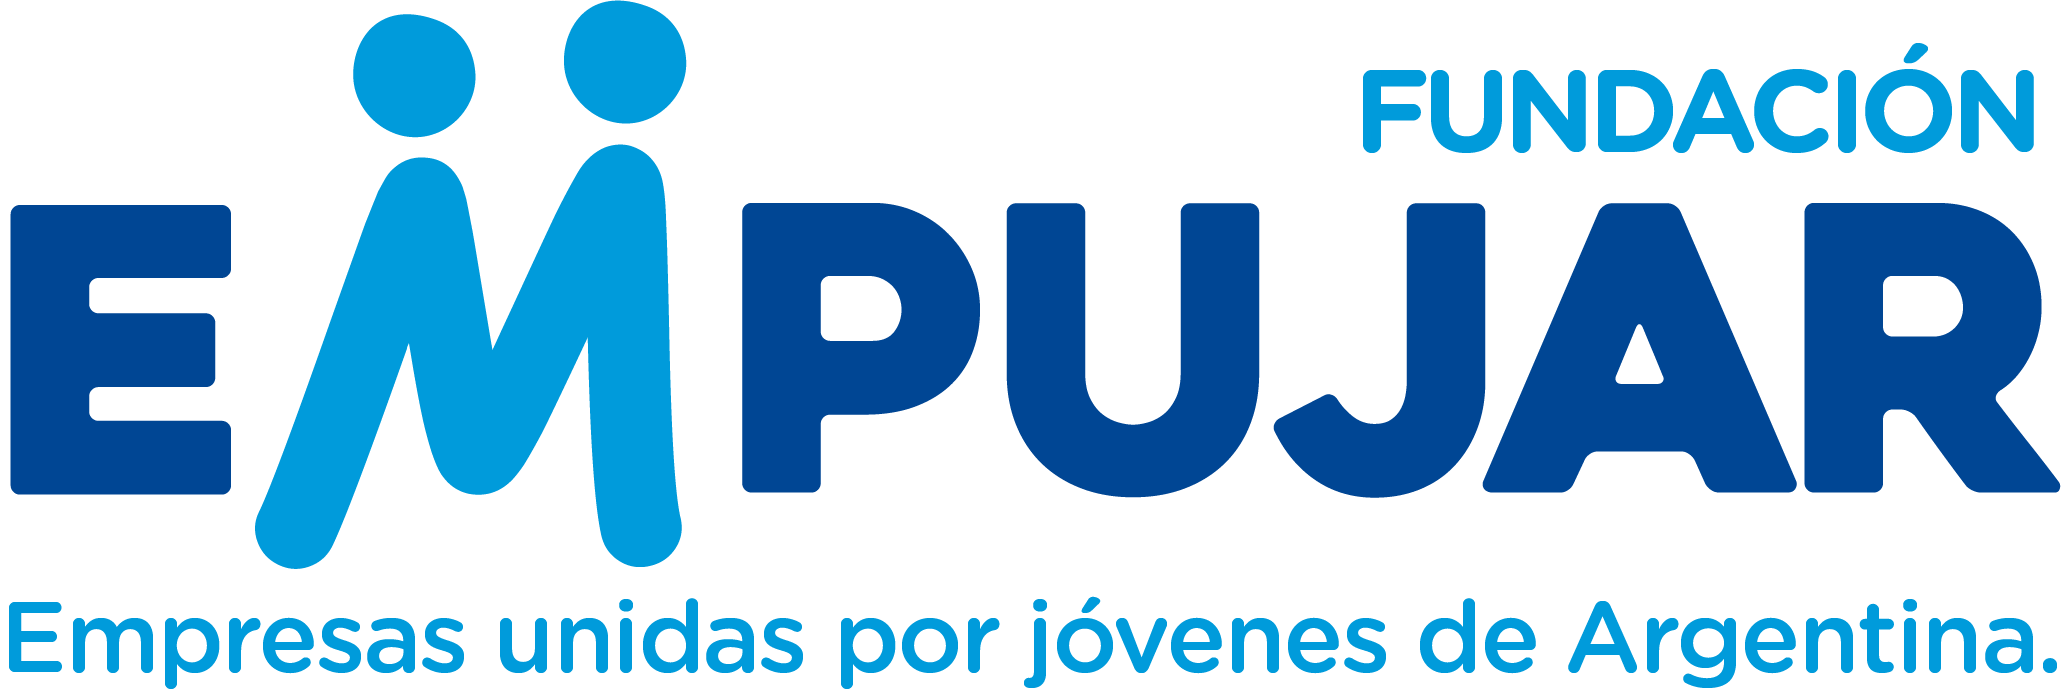 Fundación Empujar - Portal Empleos